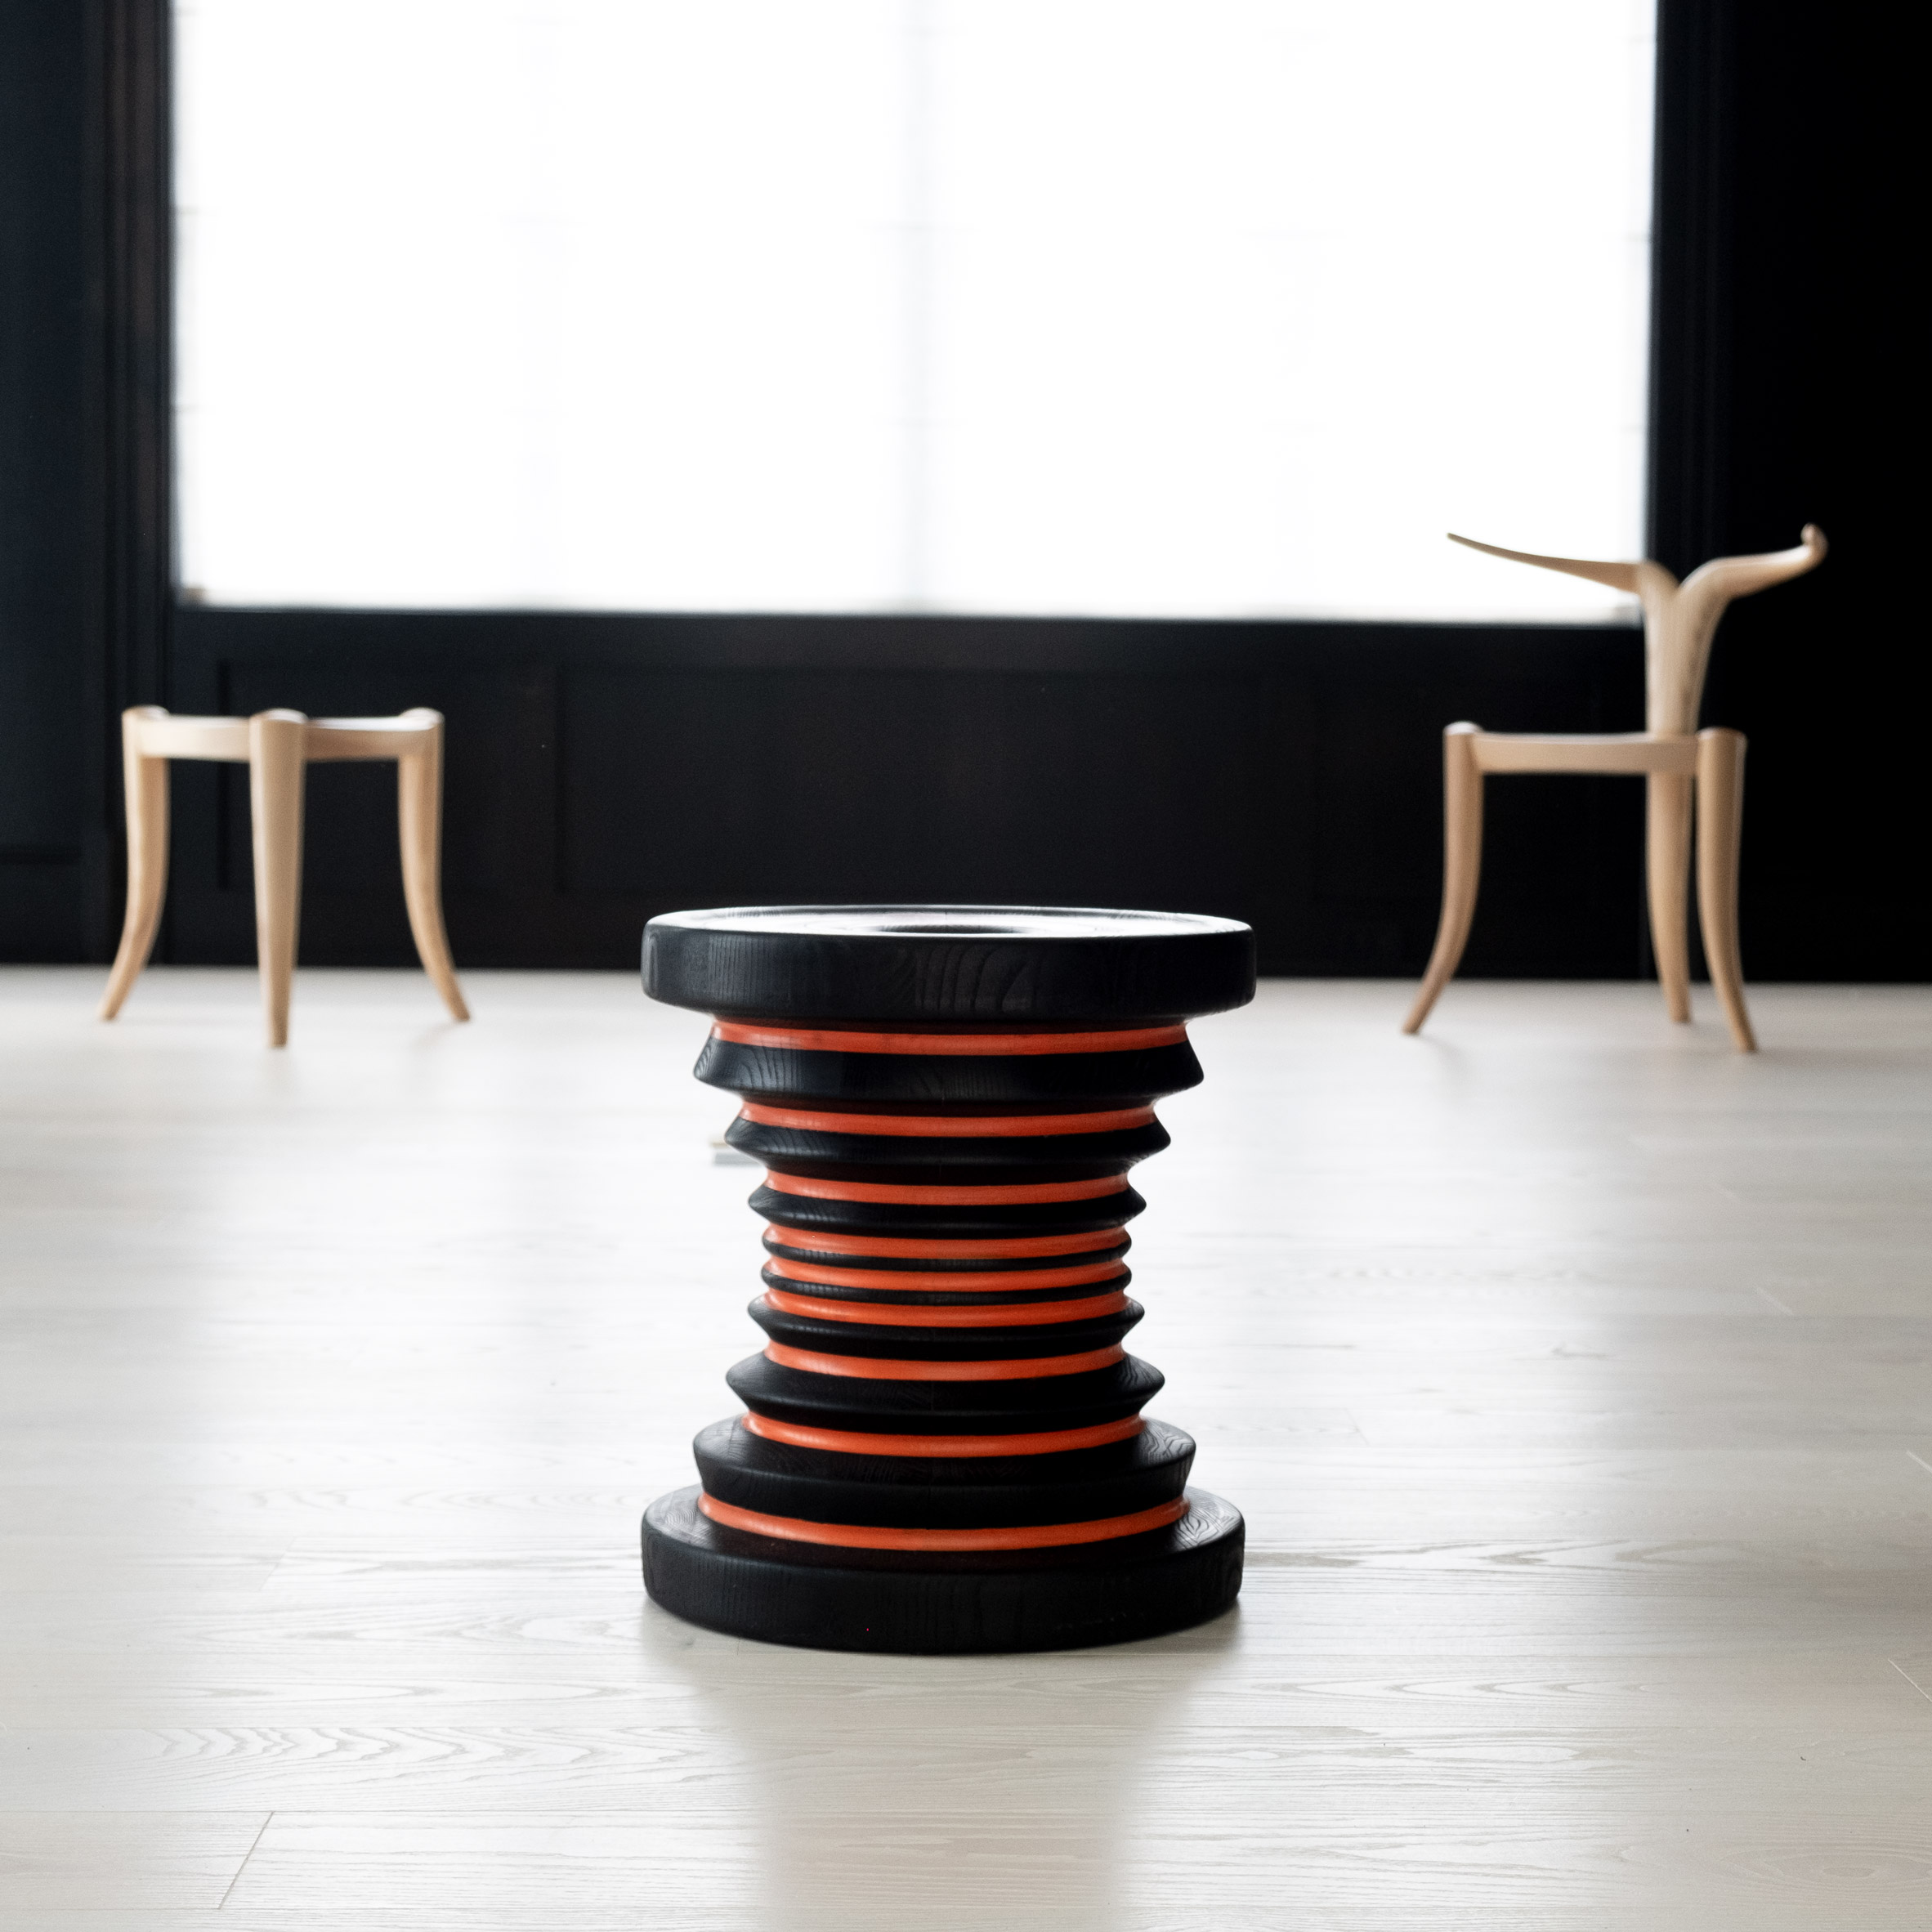 A black and red stool by Jomo Tariku